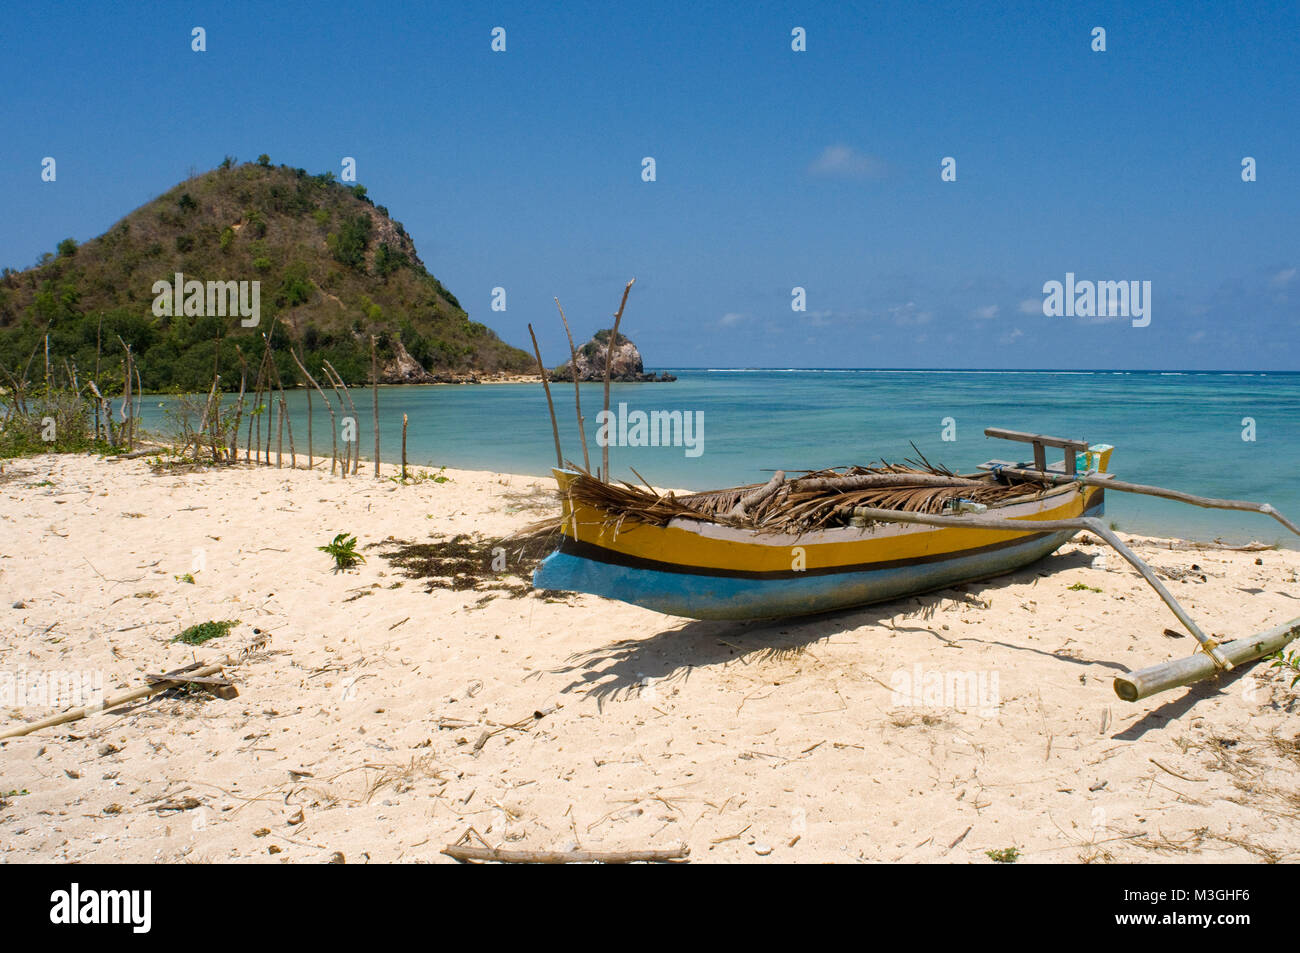 Un bateau repose sur le sable de la plage de Kuta, un village de pêcheurs au sud de Lombok, Indonésie Banque D'Images